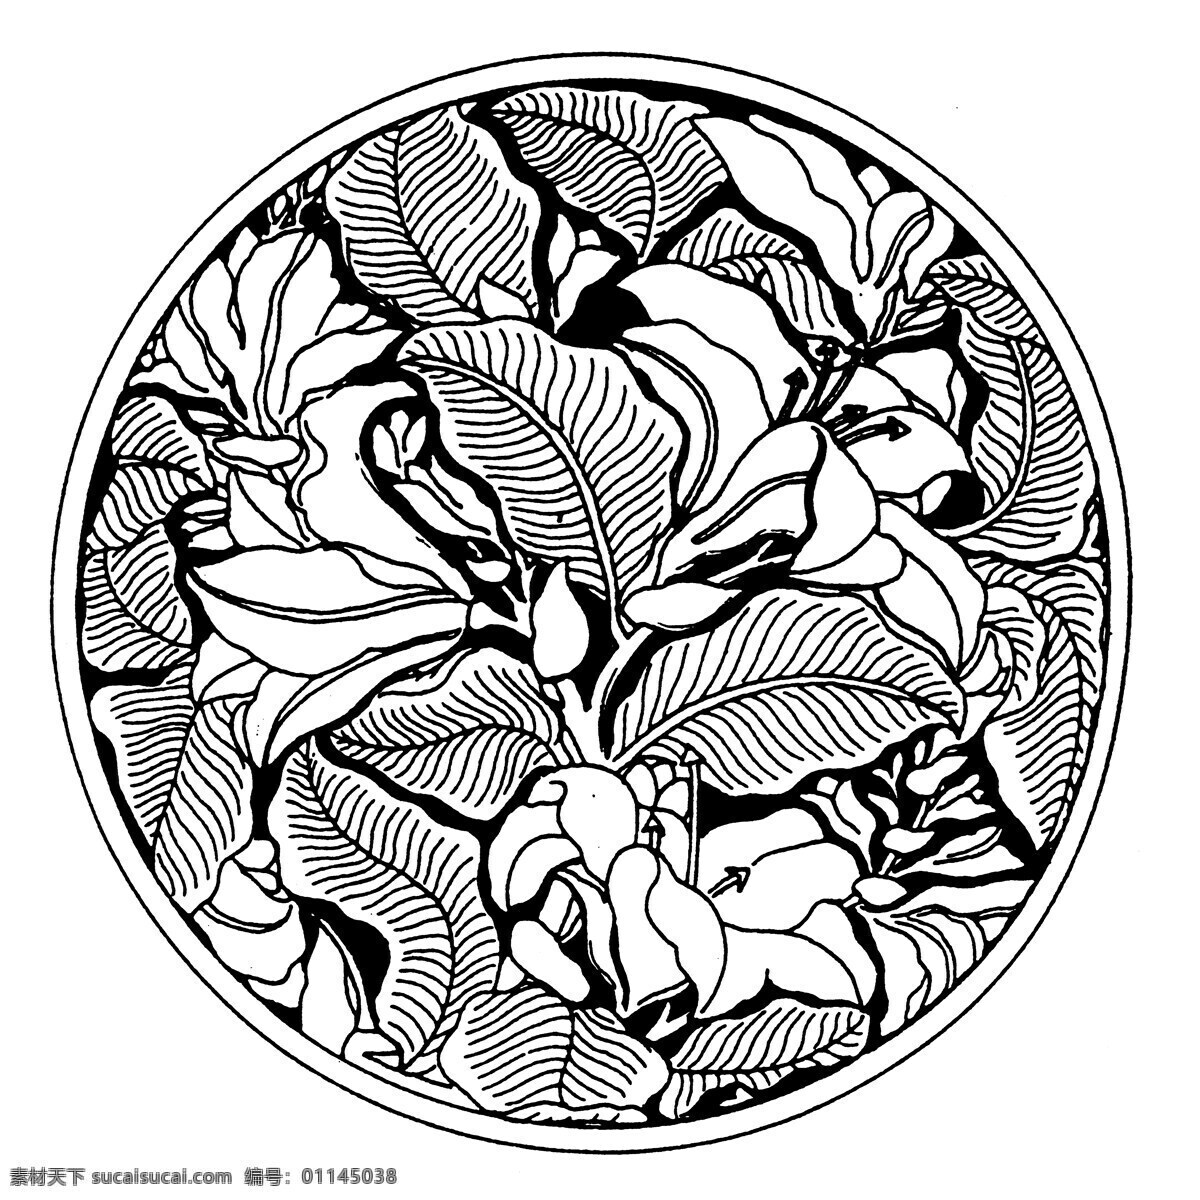 装饰图案 元明时代图案 中国 传统 图案 327 设计素材 书画美术 白色